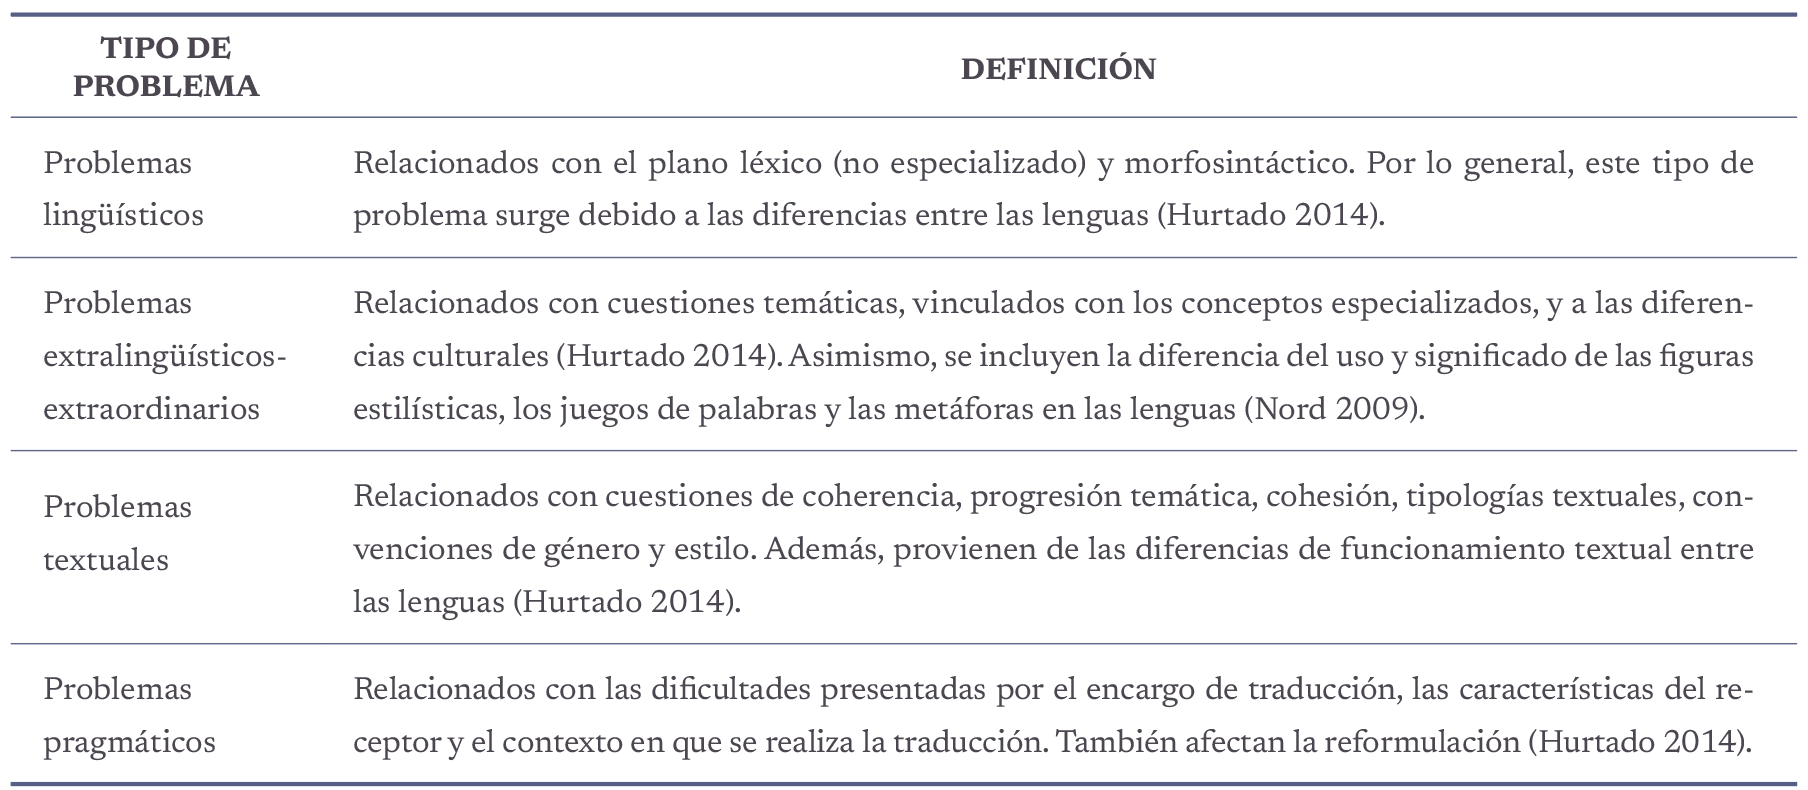 Problemas de traducción según Nord (2009) y Hurtado (2014).